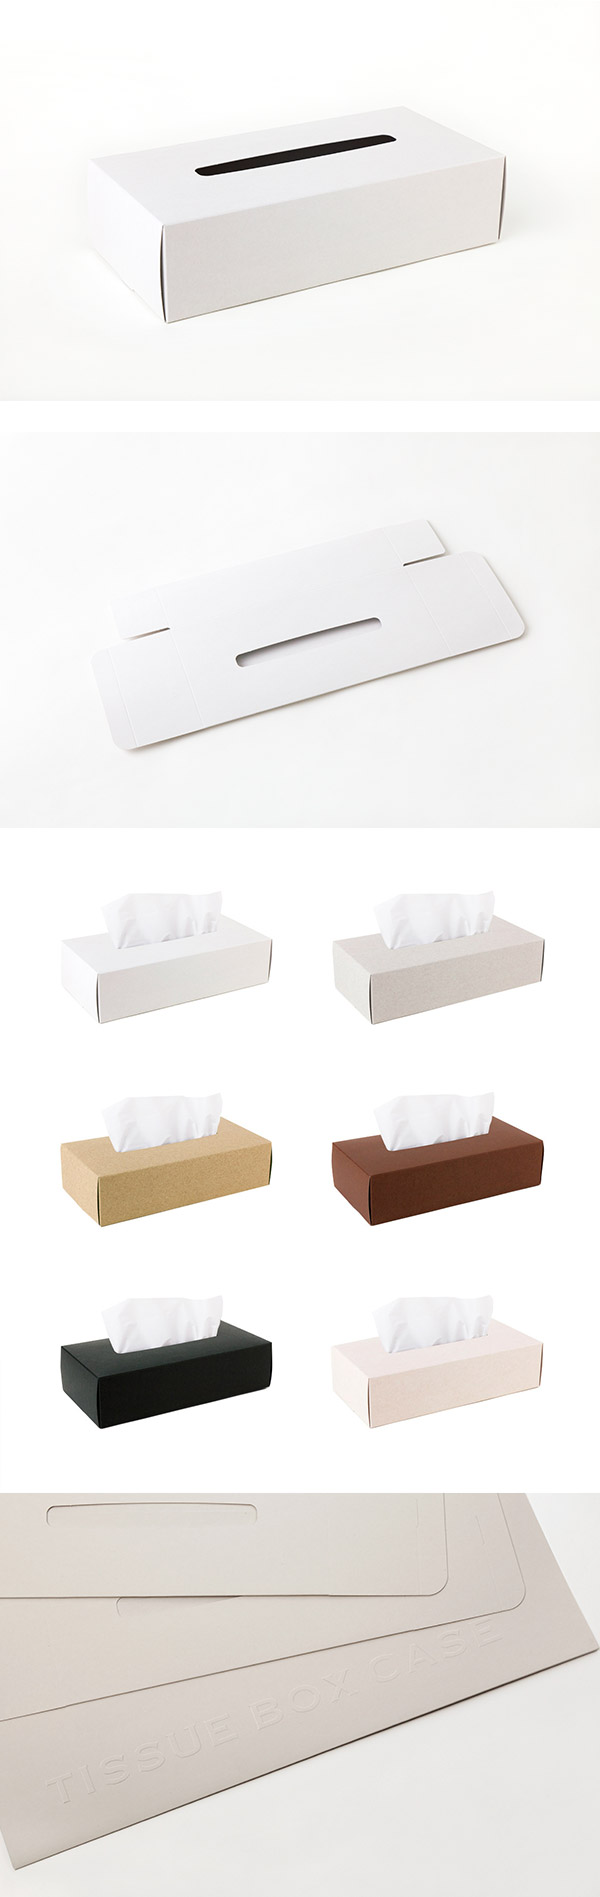 【4/16~4/22精選品牌9折優惠】Perrocaliente TISSUE BOX CASE 面紙盒 2入 白色